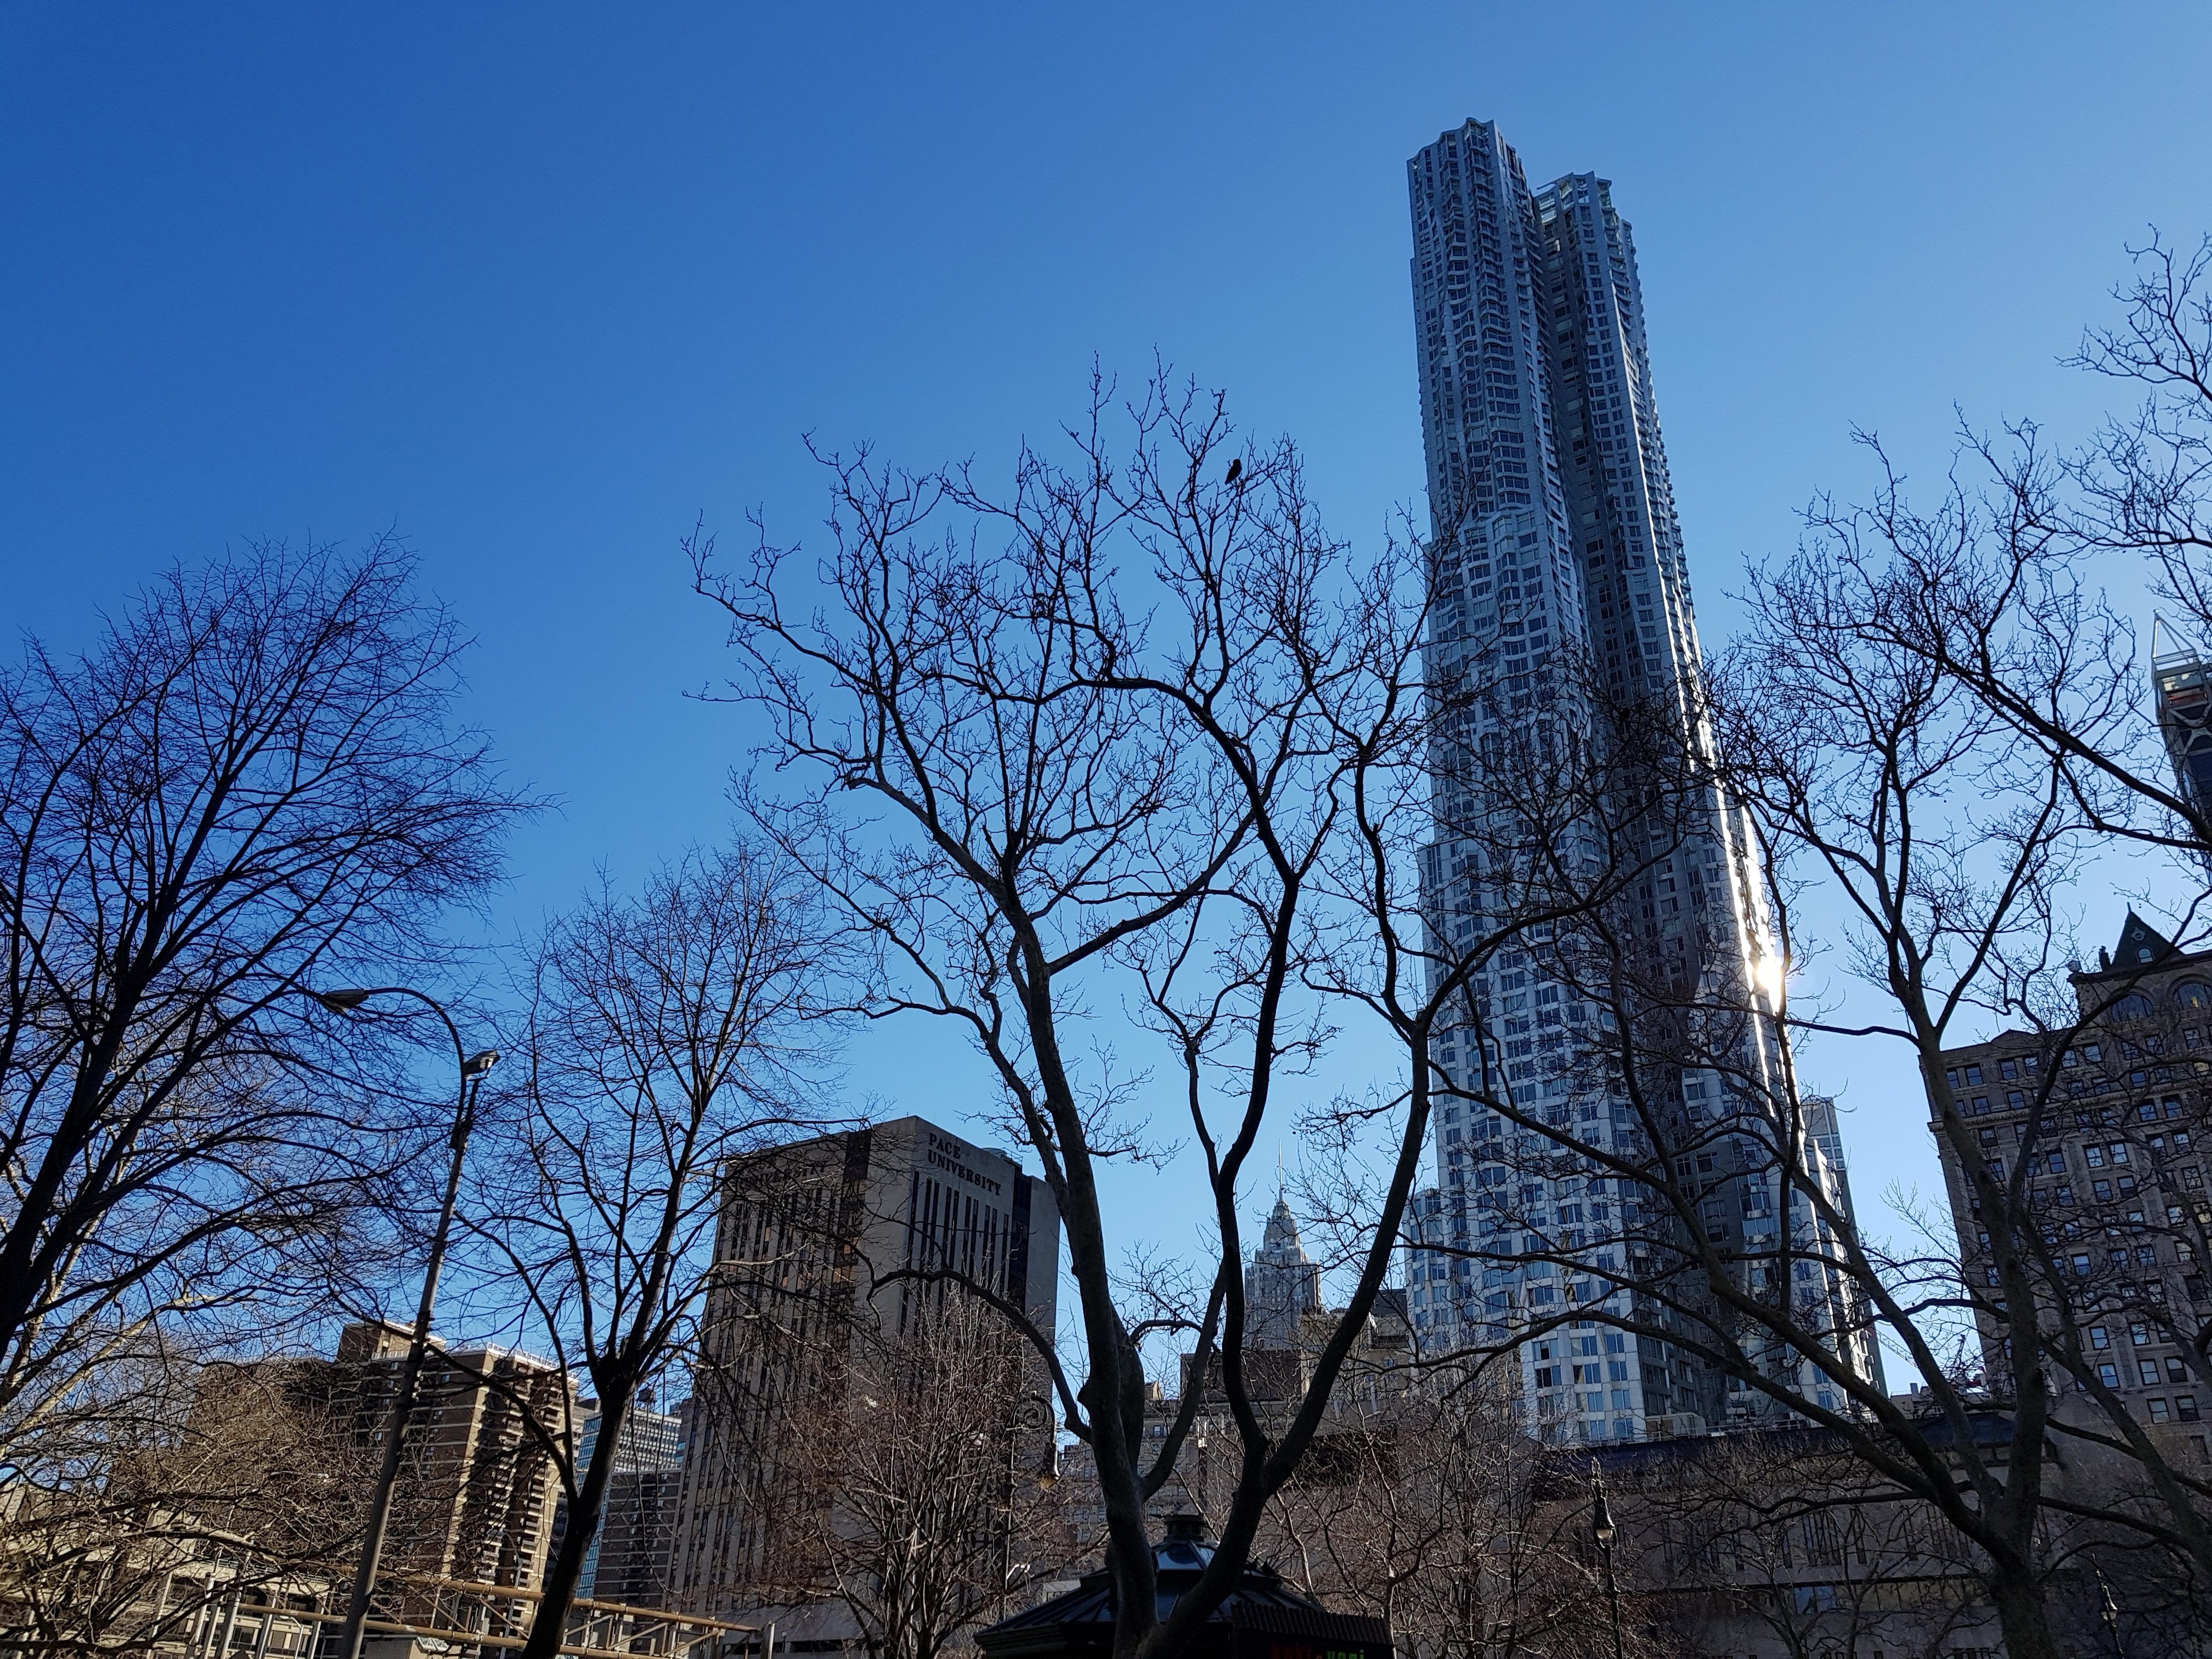 ตัวอย่างภาพถ่ายจากกล้อง Galaxy S8 ทั้งหน้าและหลัง จัดเซทใหญ่ส่งตรงจากนิวยอร์ค สวยขนาดไหนมาดูกัน